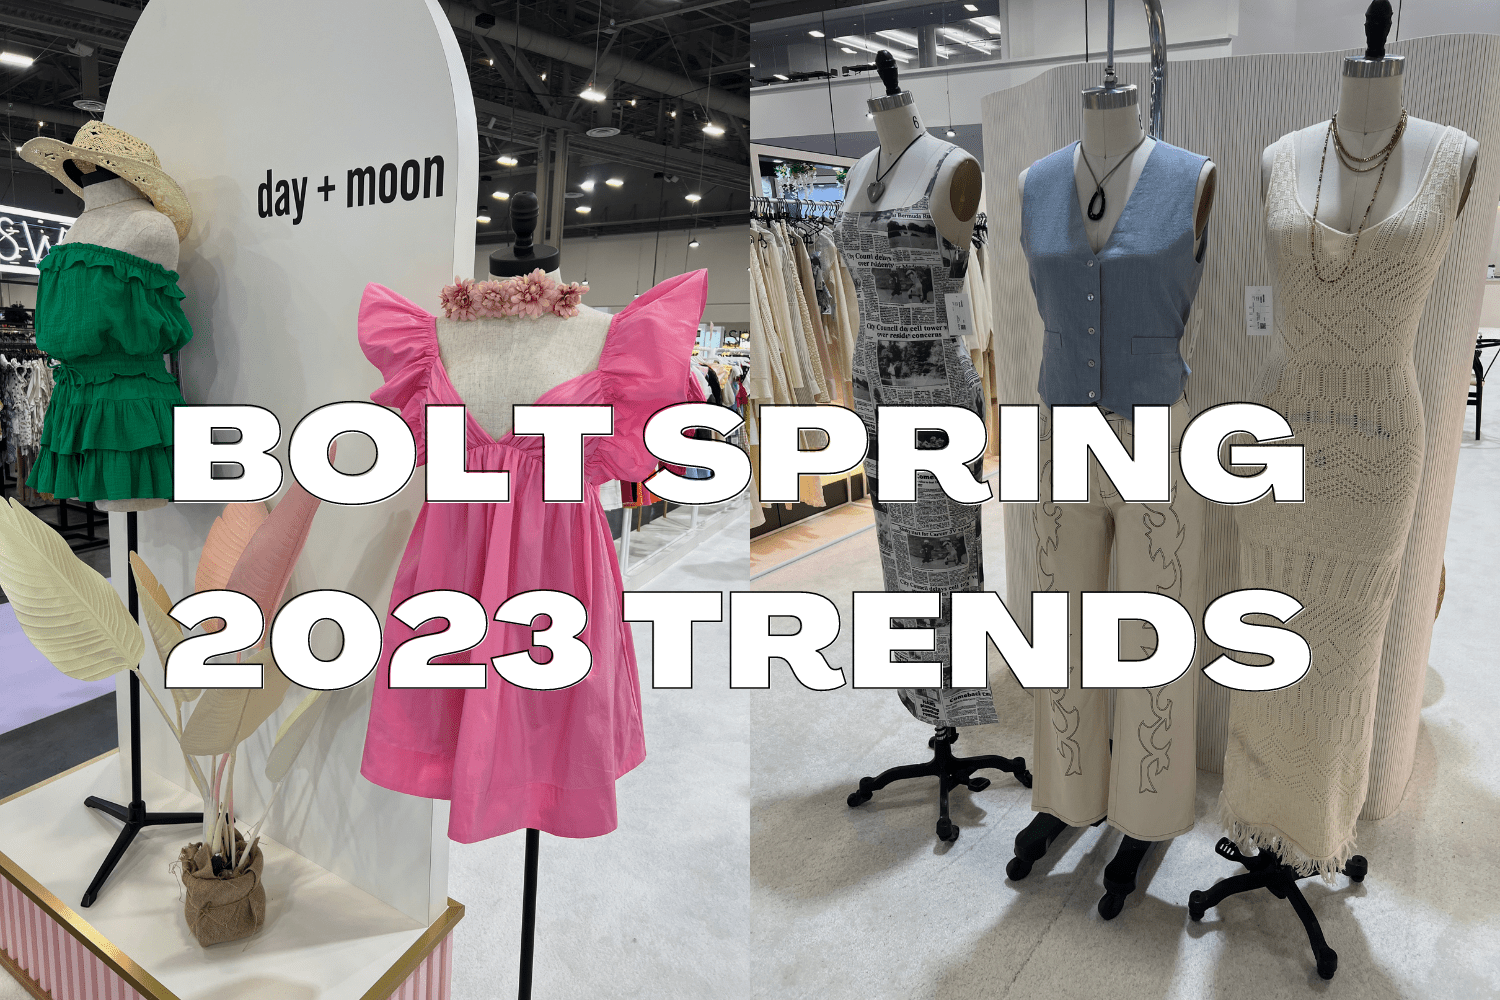 Bolt Spring 2023 Trends!